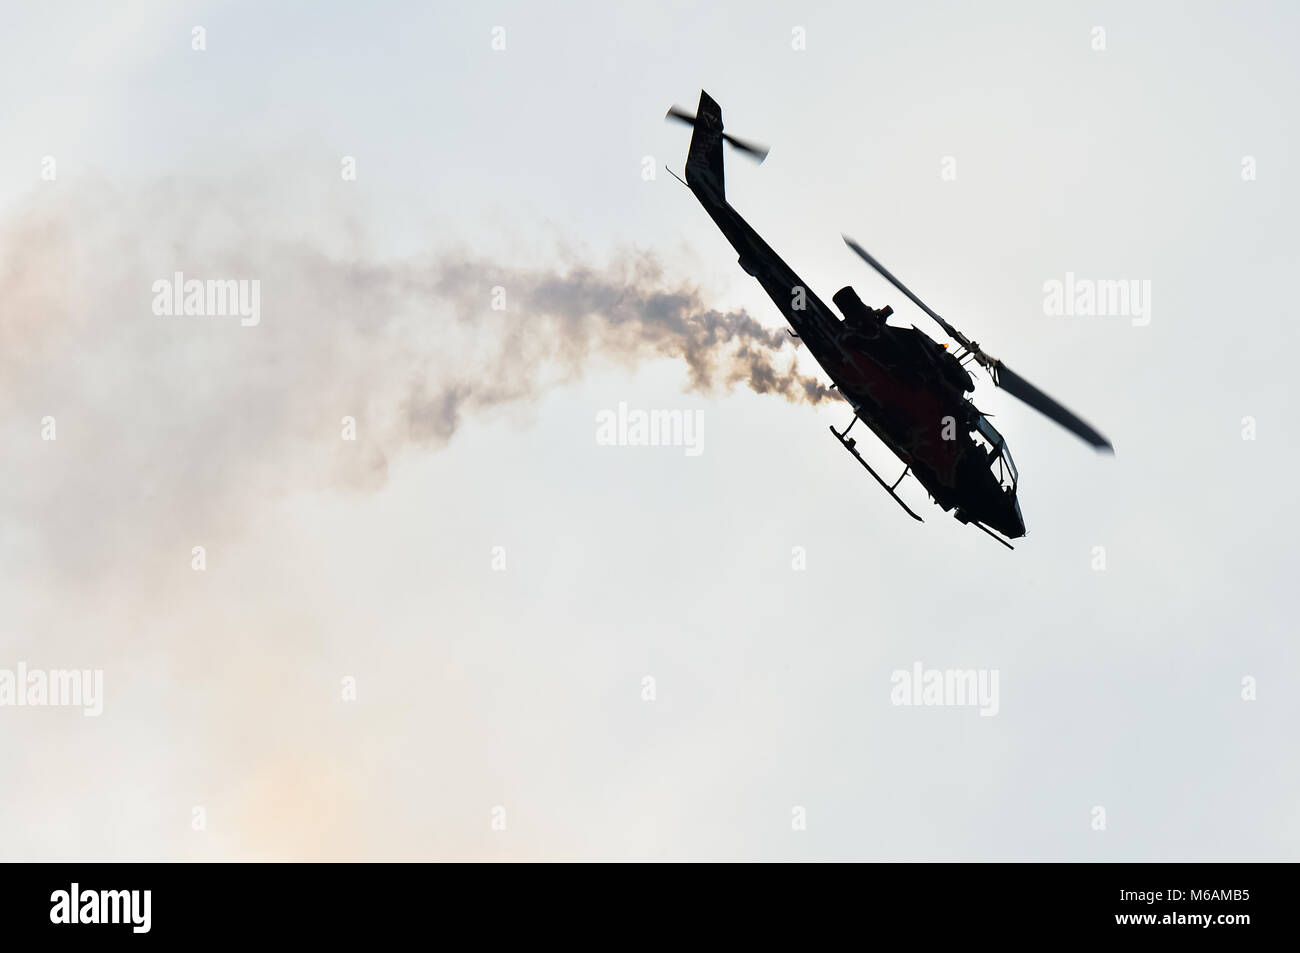 Miliraty Air hélicoptère Cobra faisant échapper à un spectacle aérien manouvers Banque D'Images